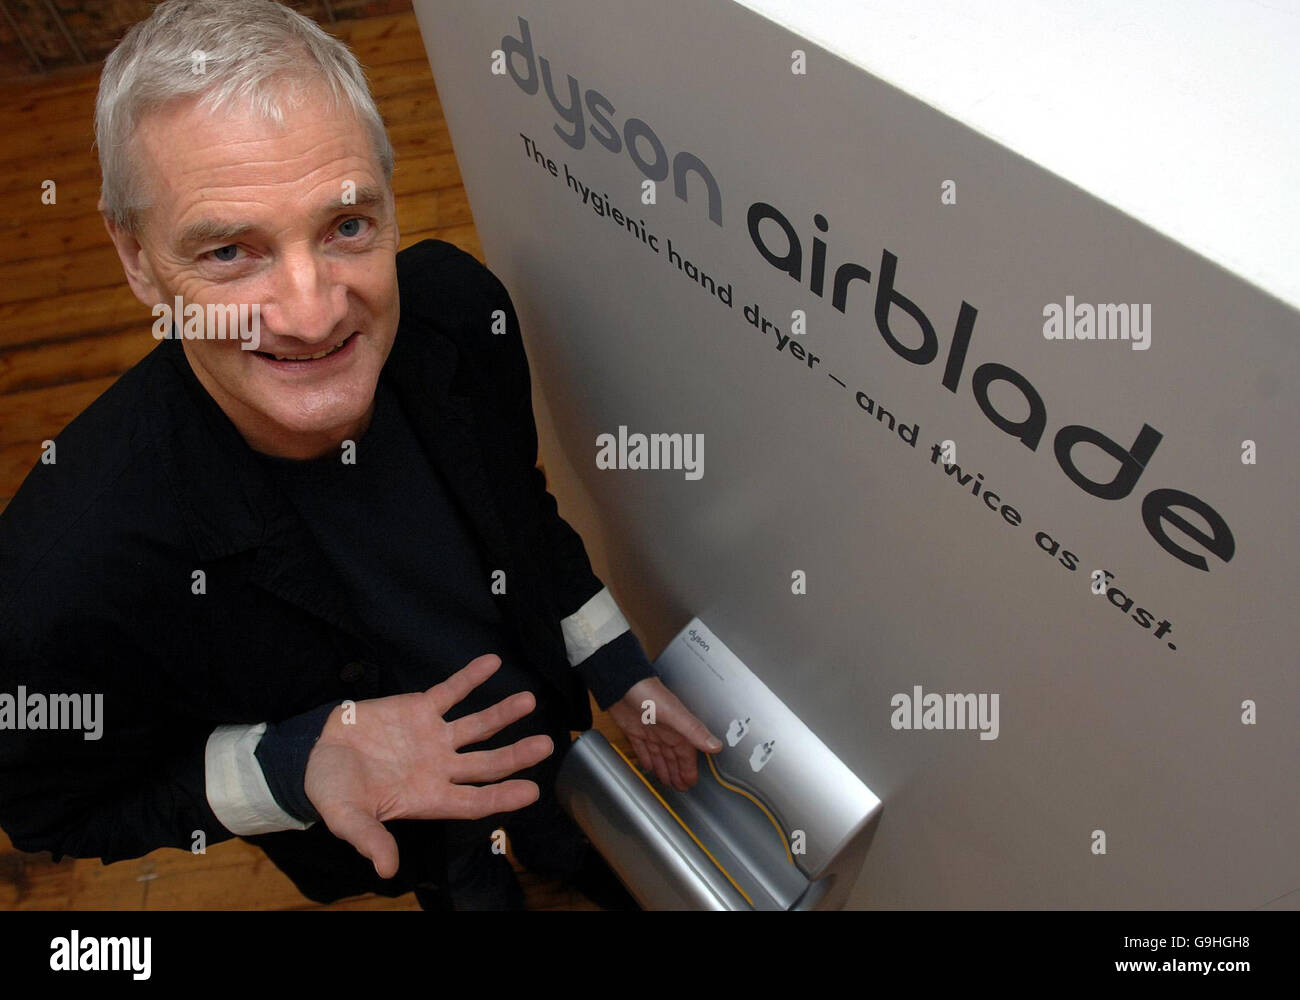 Aspirateur King James Dyson avec sa nouvelle invention The Airblade, un  sèche-mains à grande vitesse pour toilettes publiques, lors d'un  dévoilement à Londres Photo Stock - Alamy